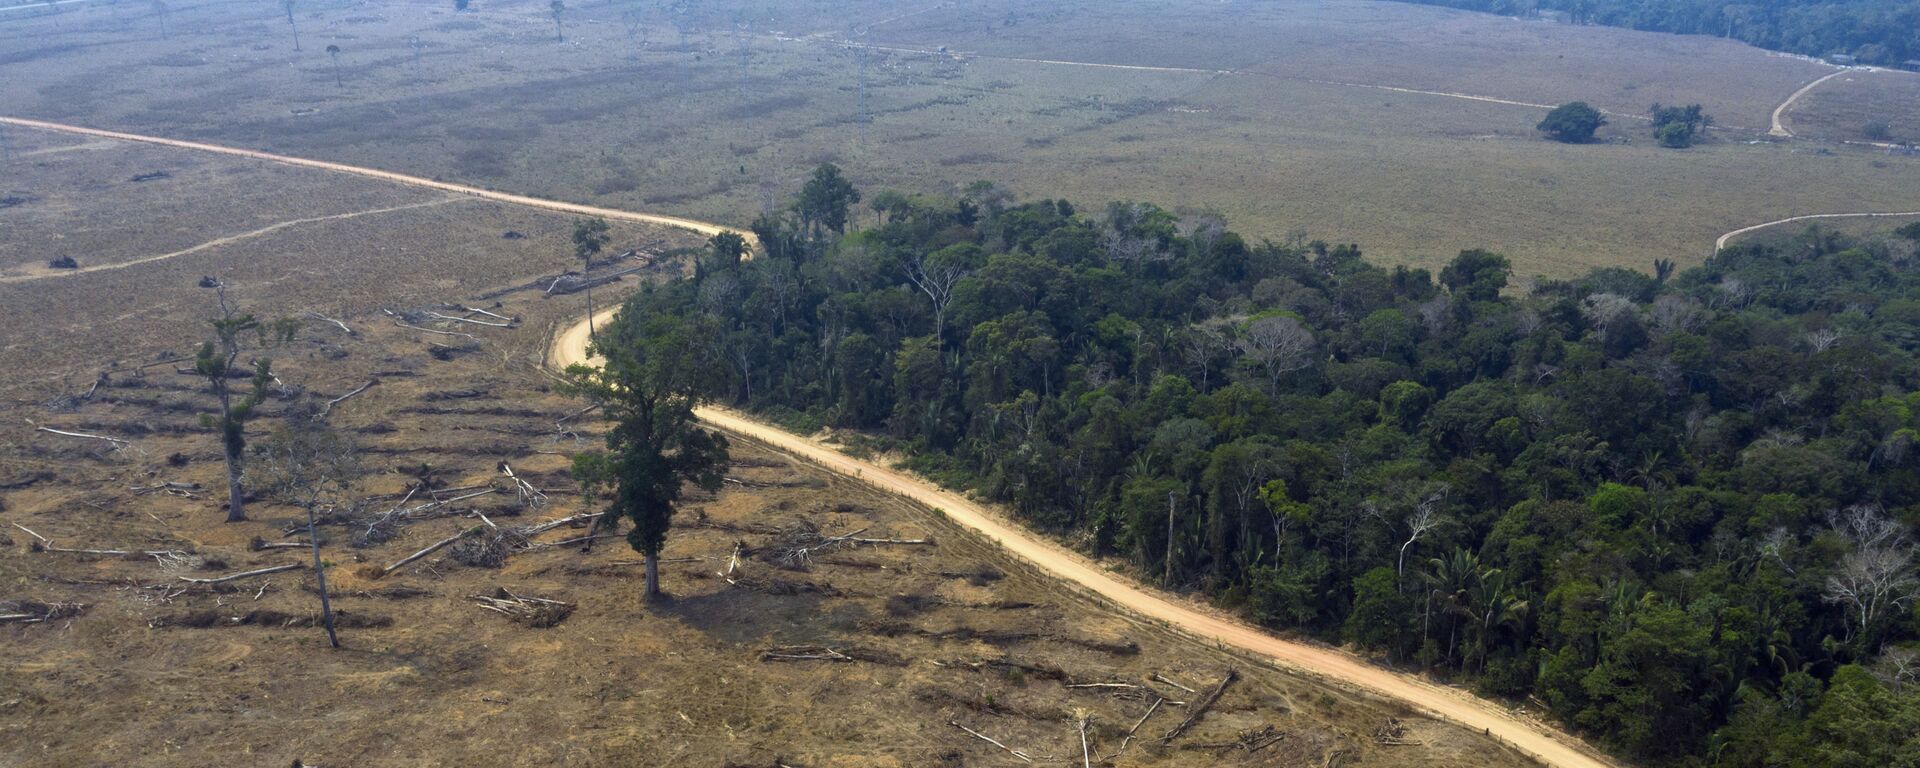 Área desmatada da Amazônia nas proximidades de Porto Velho. - Sputnik Brasil, 1920, 25.10.2019